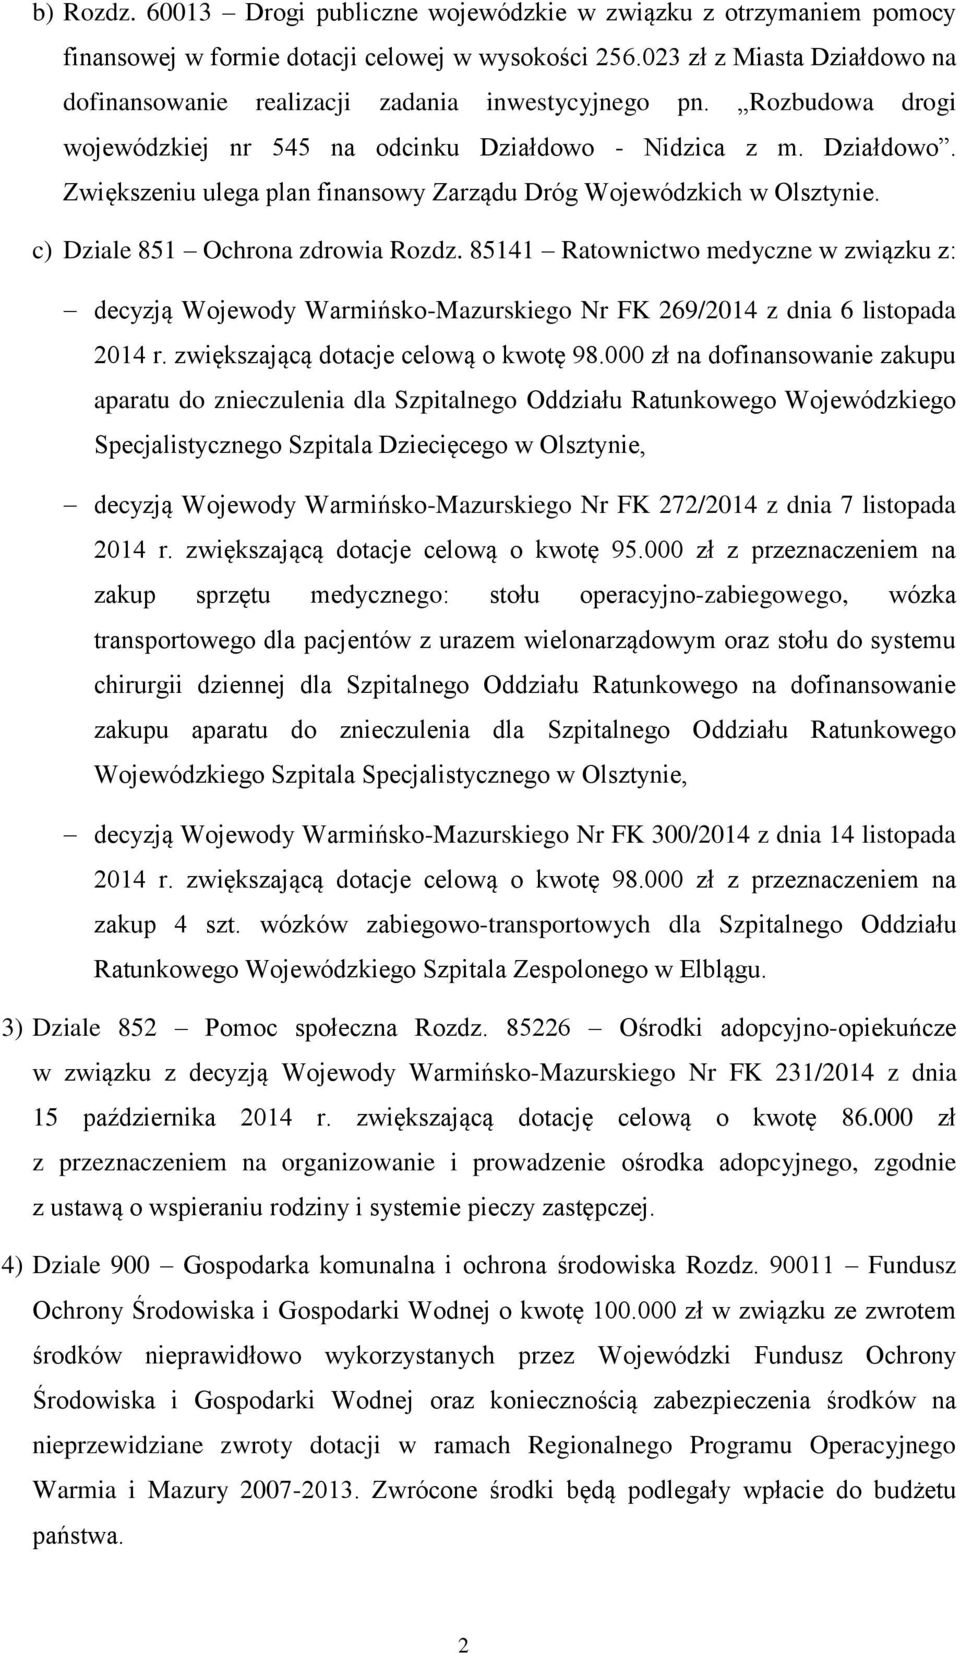 c) Dziale 851 Ochrona zdrowia Rozdz. 85141 Ratownictwo medyczne w związku z: decyzją Wojewody Warmińsko-Mazurskiego Nr FK 269/2014 z dnia 6 listopada 2014 r. zwiększającą dotacje celową o kwotę 98.